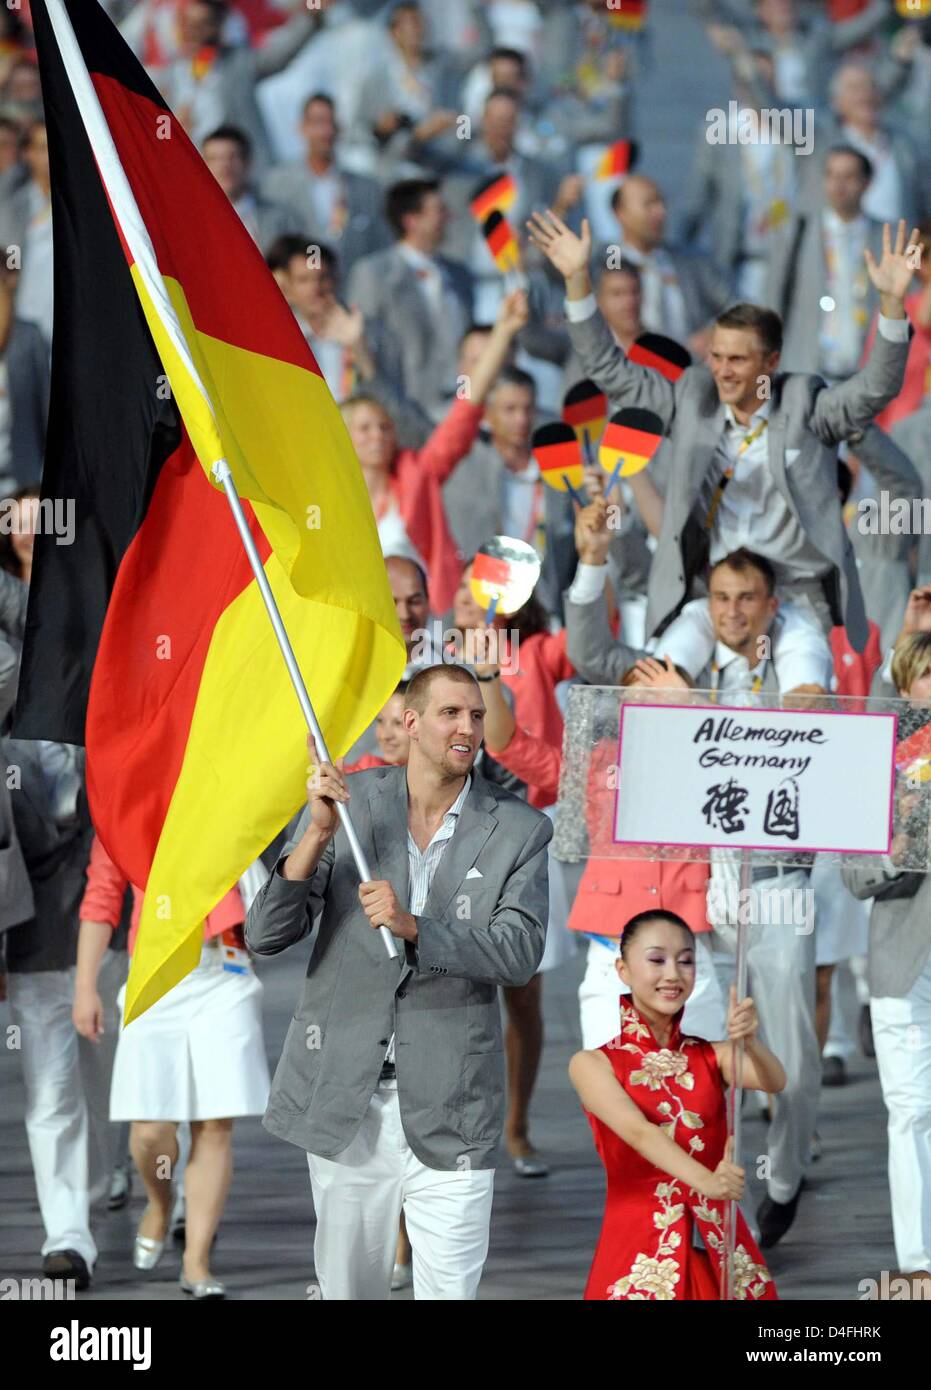 Porte-drapeau allemand Dirk Nowitzki dirige l'équipe dans le stade lors de  la cérémonie d'ouverture des Jeux Olympiques de Beijing 2008 au Stade  National, connu sous le nom de nid d'oiseau, Beijing, Chine,